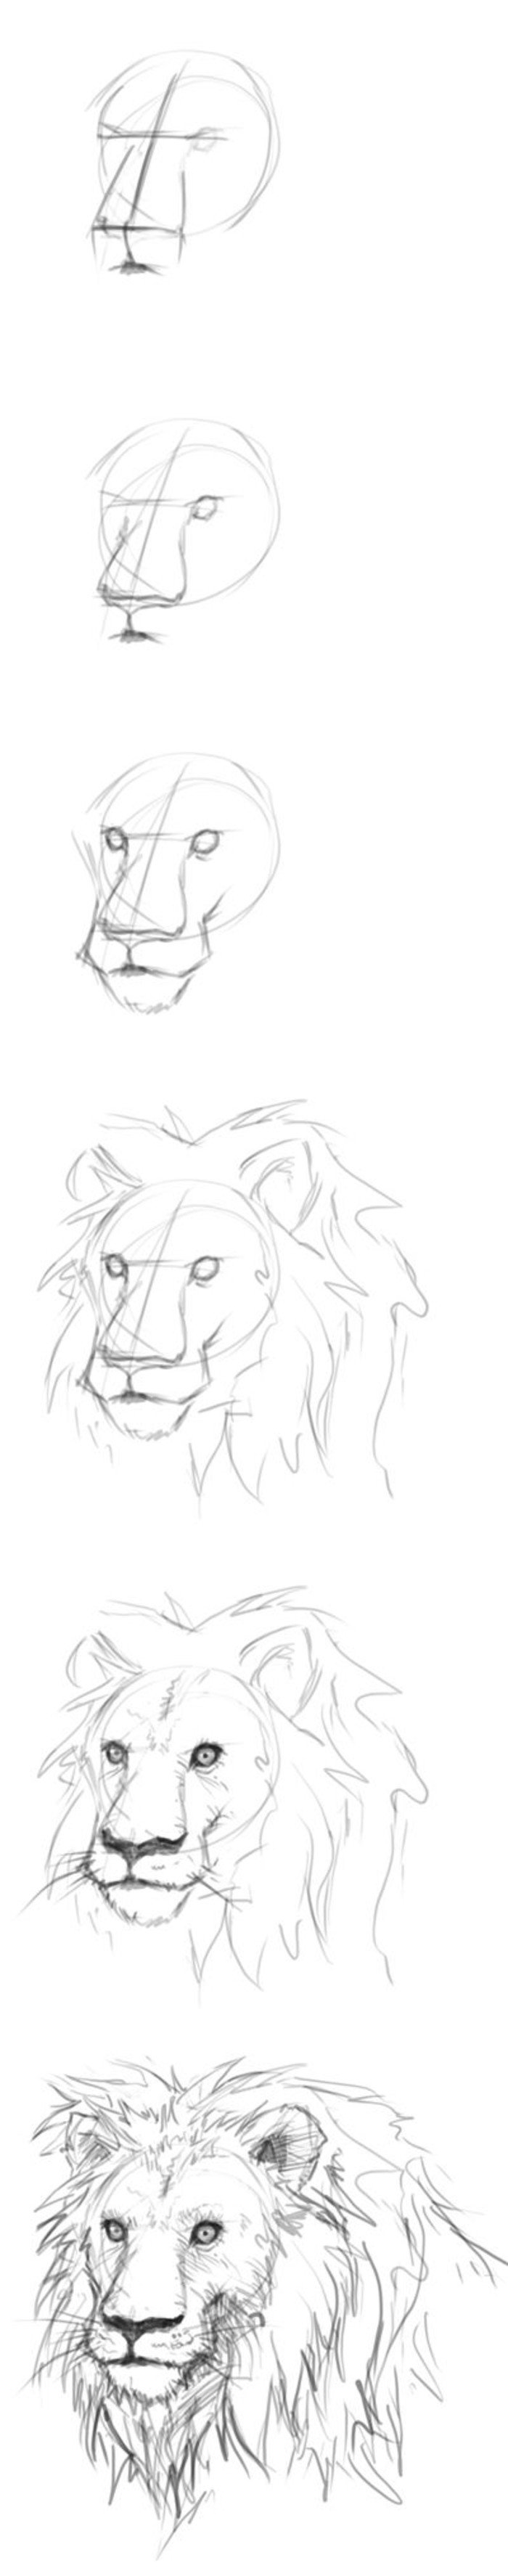 Поэтапное рисование карандашом Льва